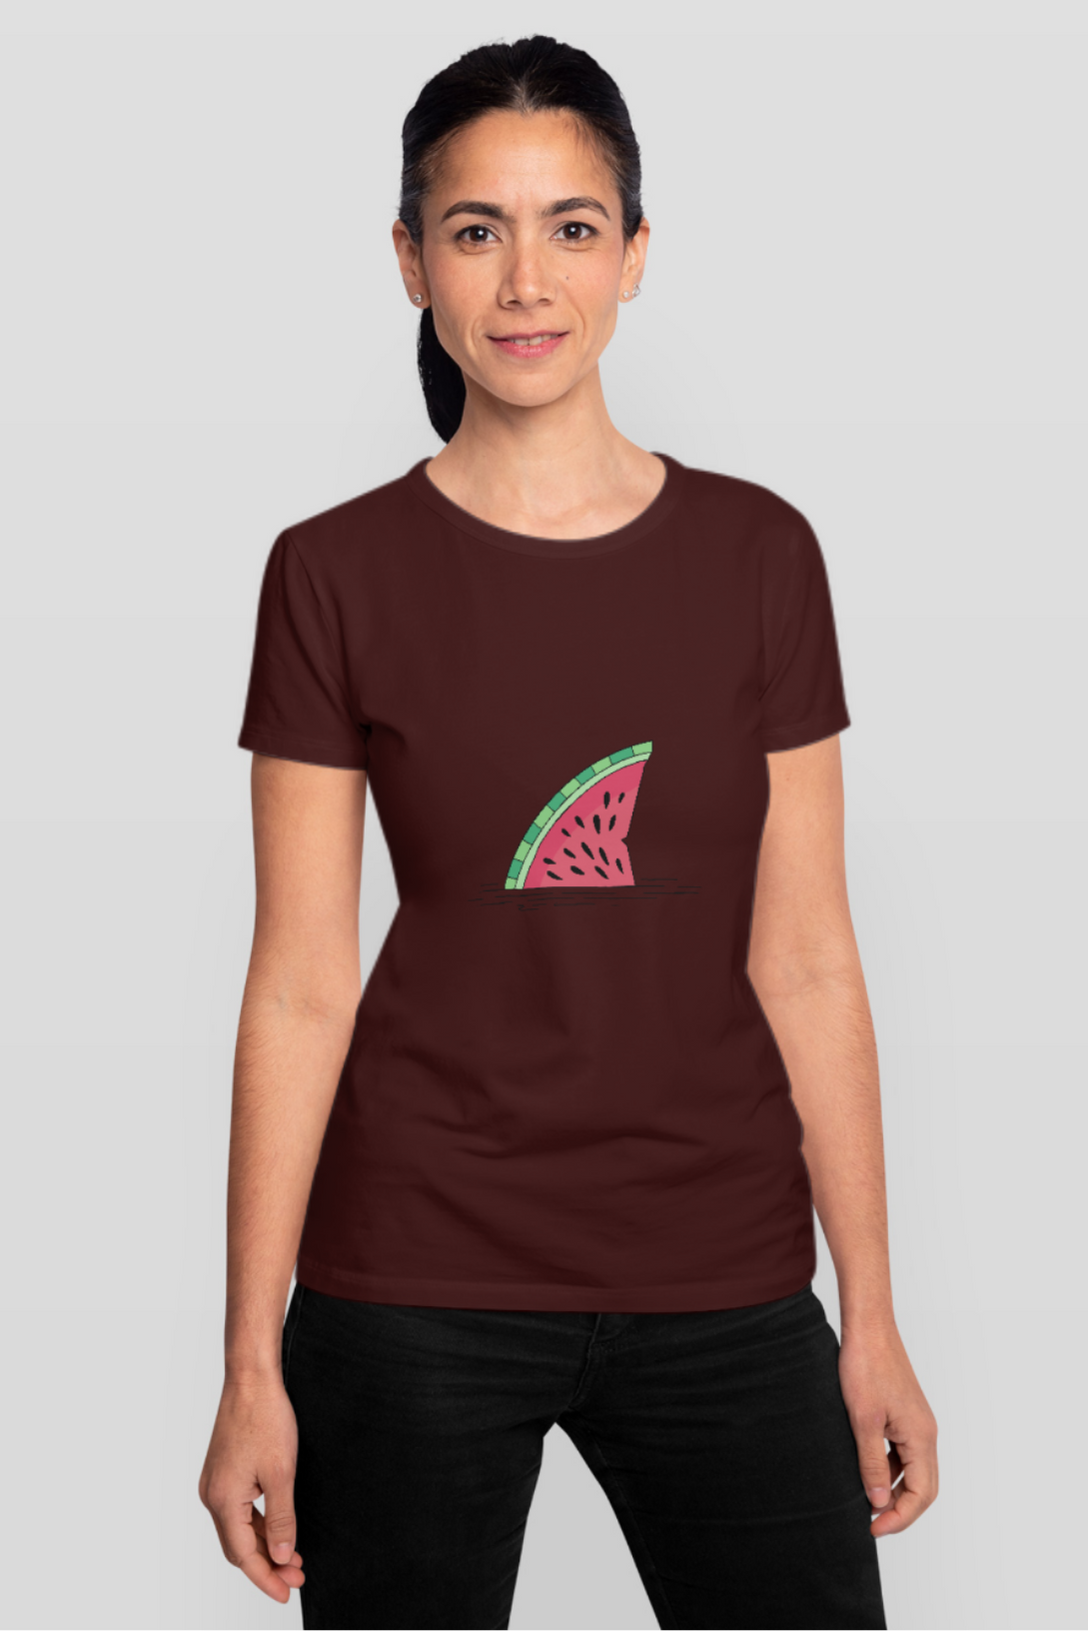 Watermelon Shark Fin Printed T-Shirt For Women - WowWaves - 7